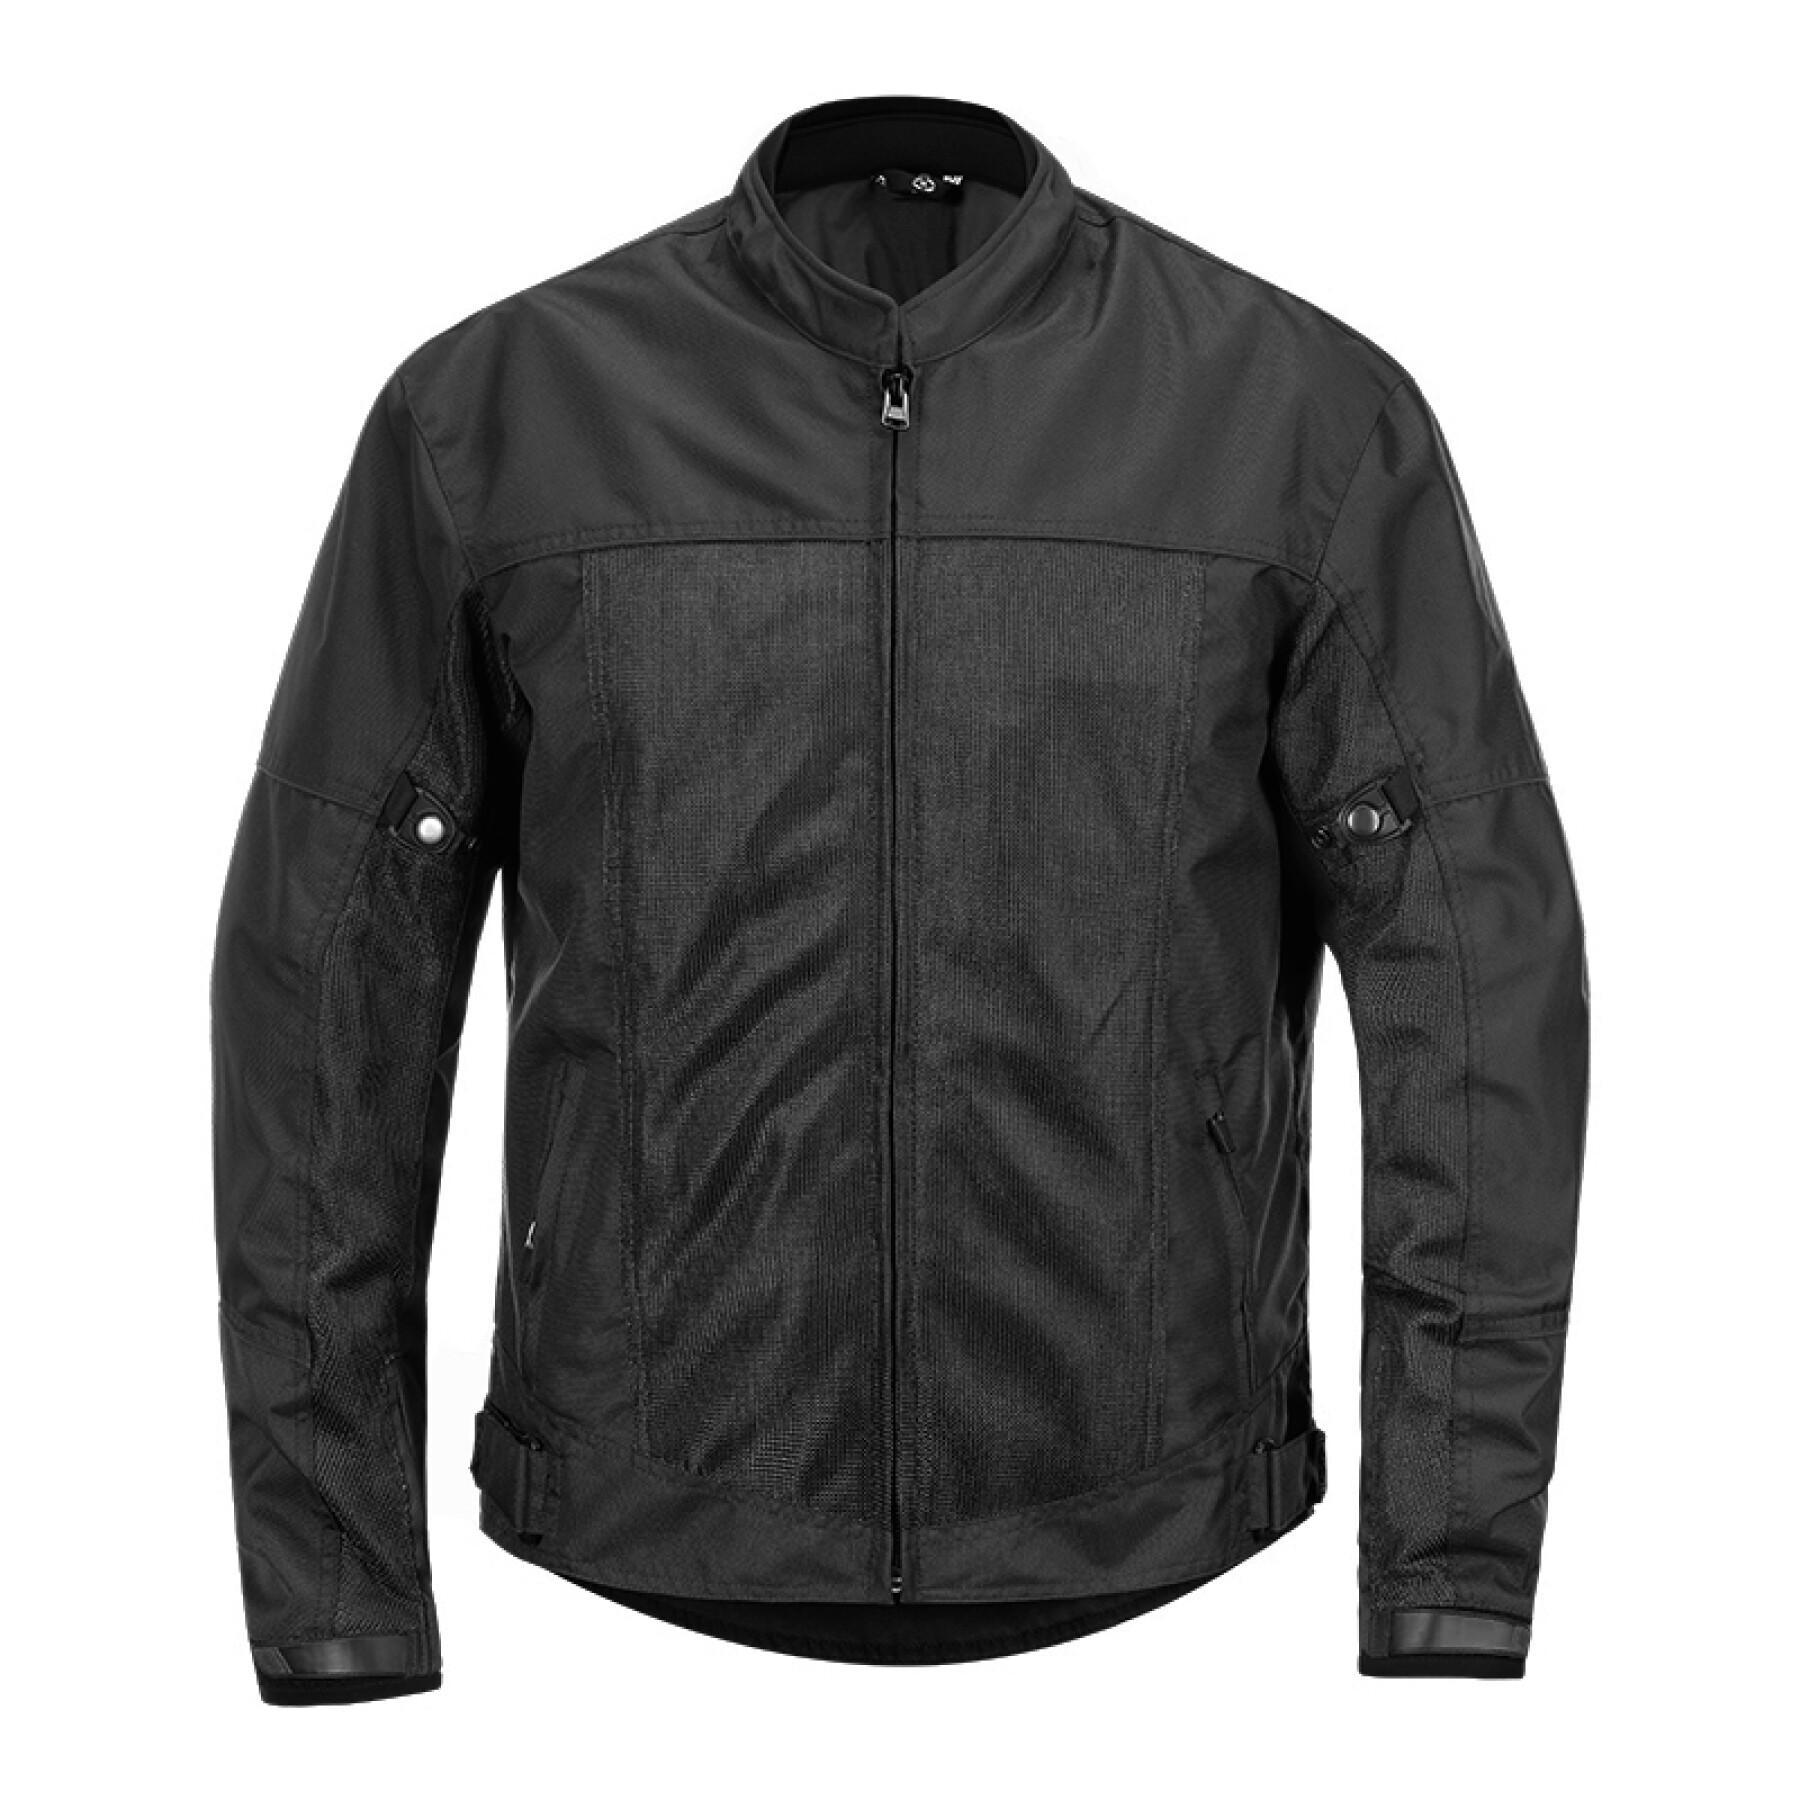 Motorcycle jacket 4Square Mercury